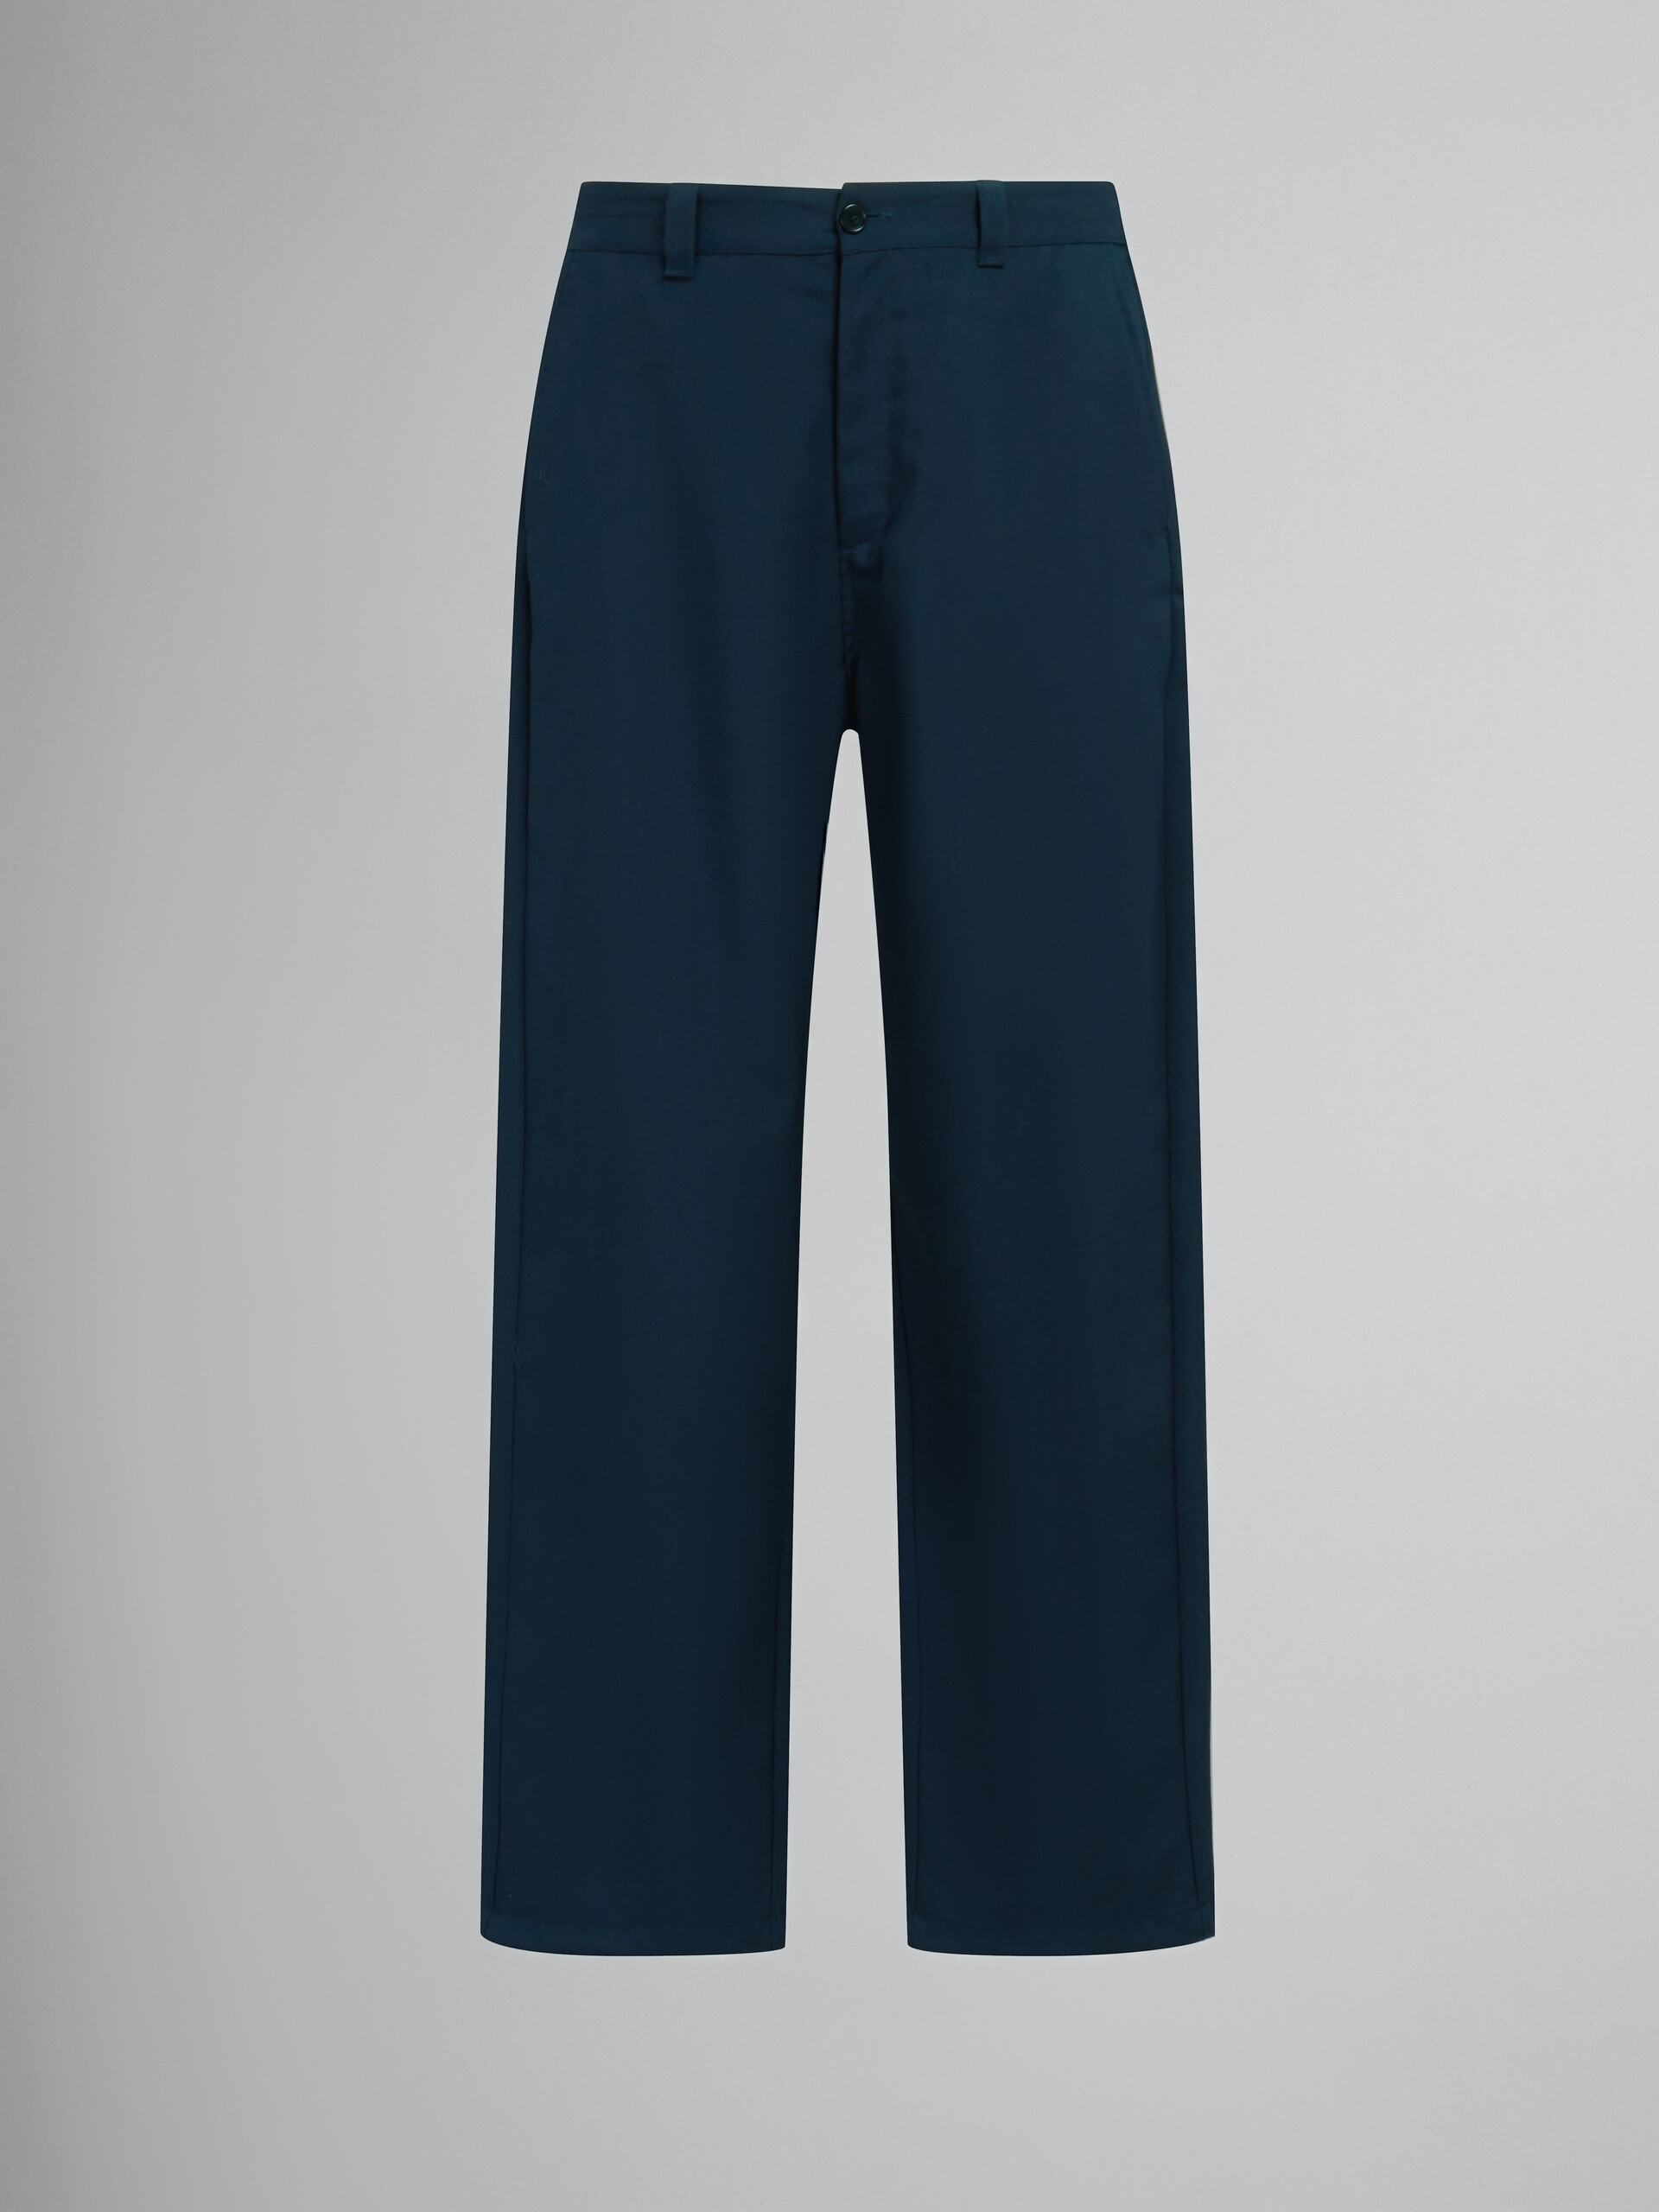 Dunkelblaue Hose aus Tropenwolle mit Logo auf dem hinteren Taillenbund - Hosen - Image 1